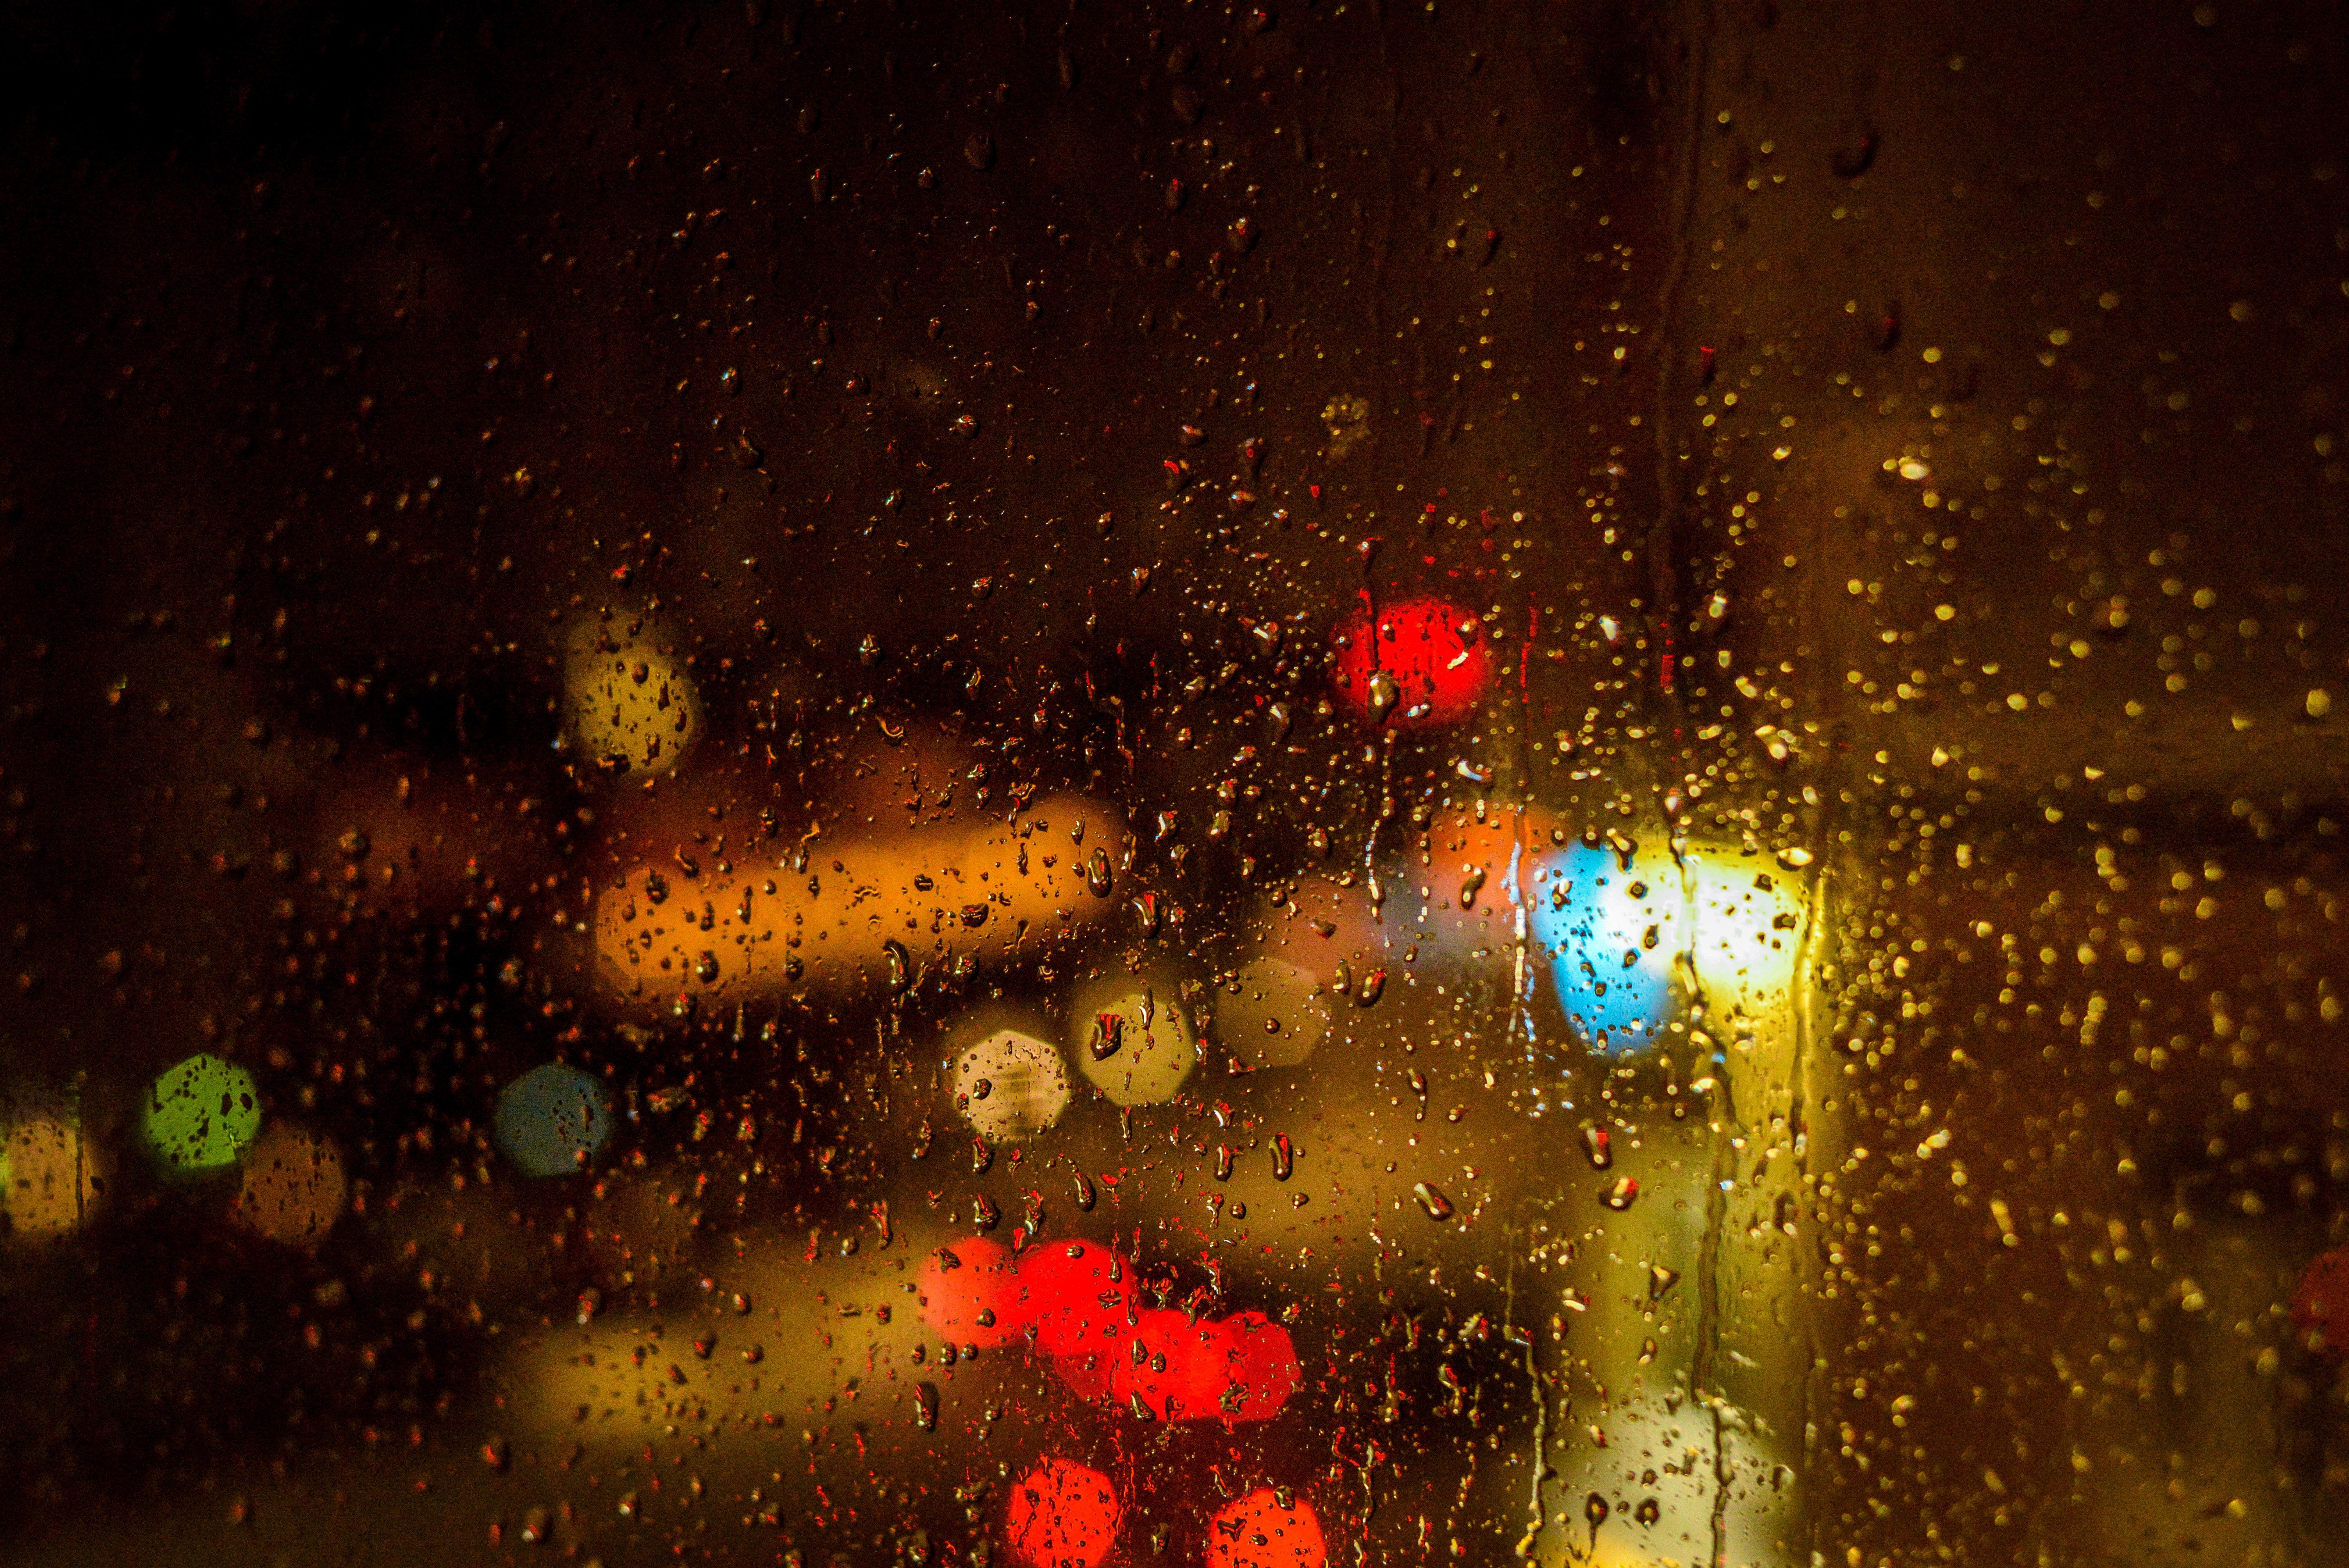 glare, rain, drops, miscellanea, miscellaneous, multicolored, motley, blur, smooth cellphone